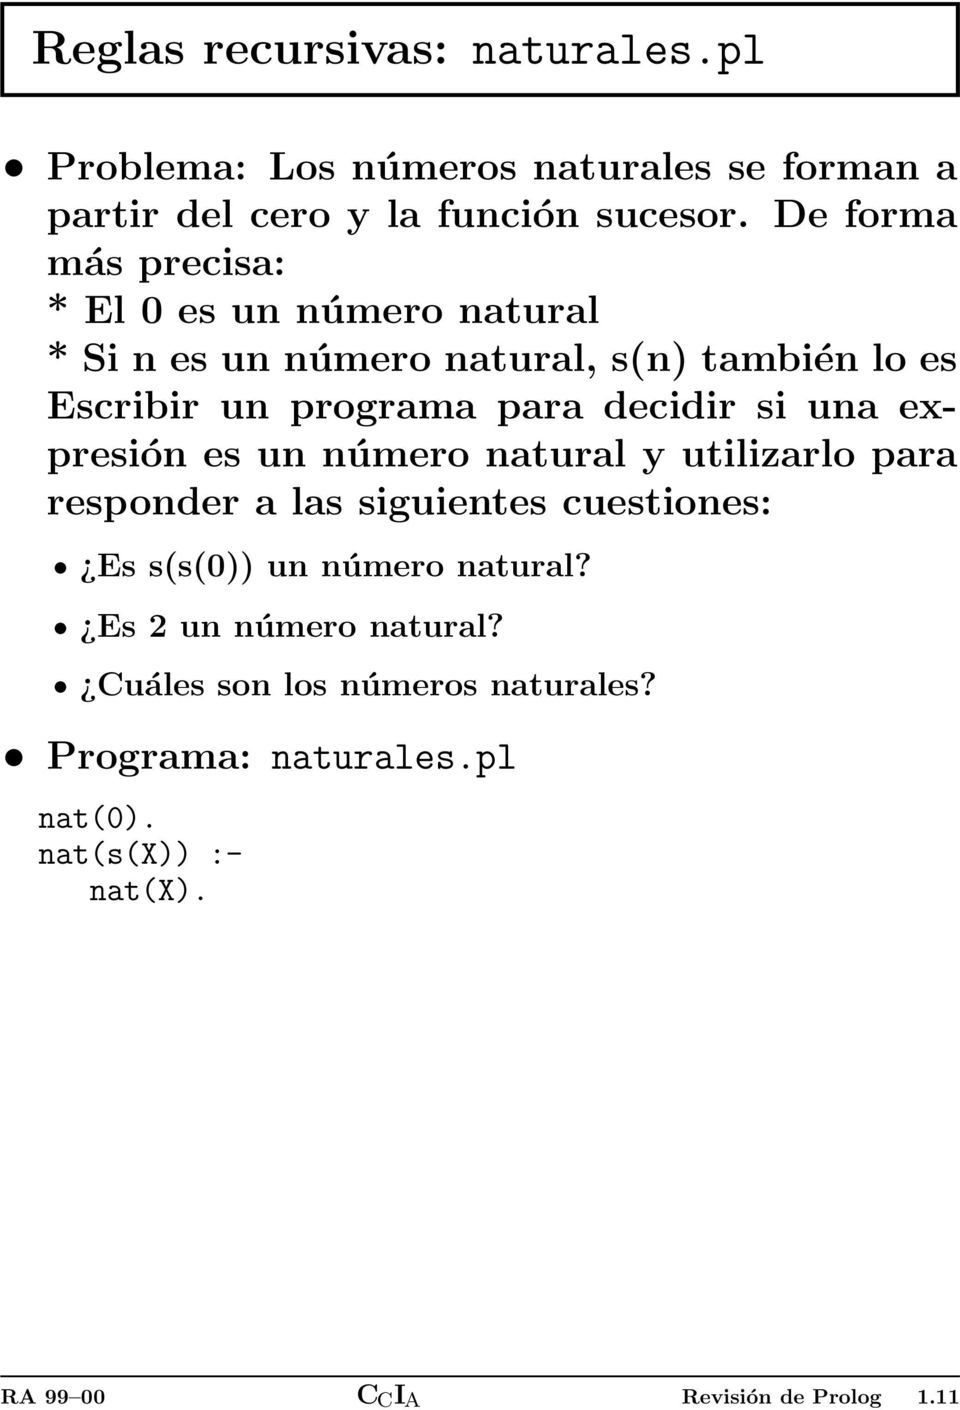 decidir si una expresión es un número natural y utilizarlo para responder a las siguientes cuestiones: Es s(s(0)) un número